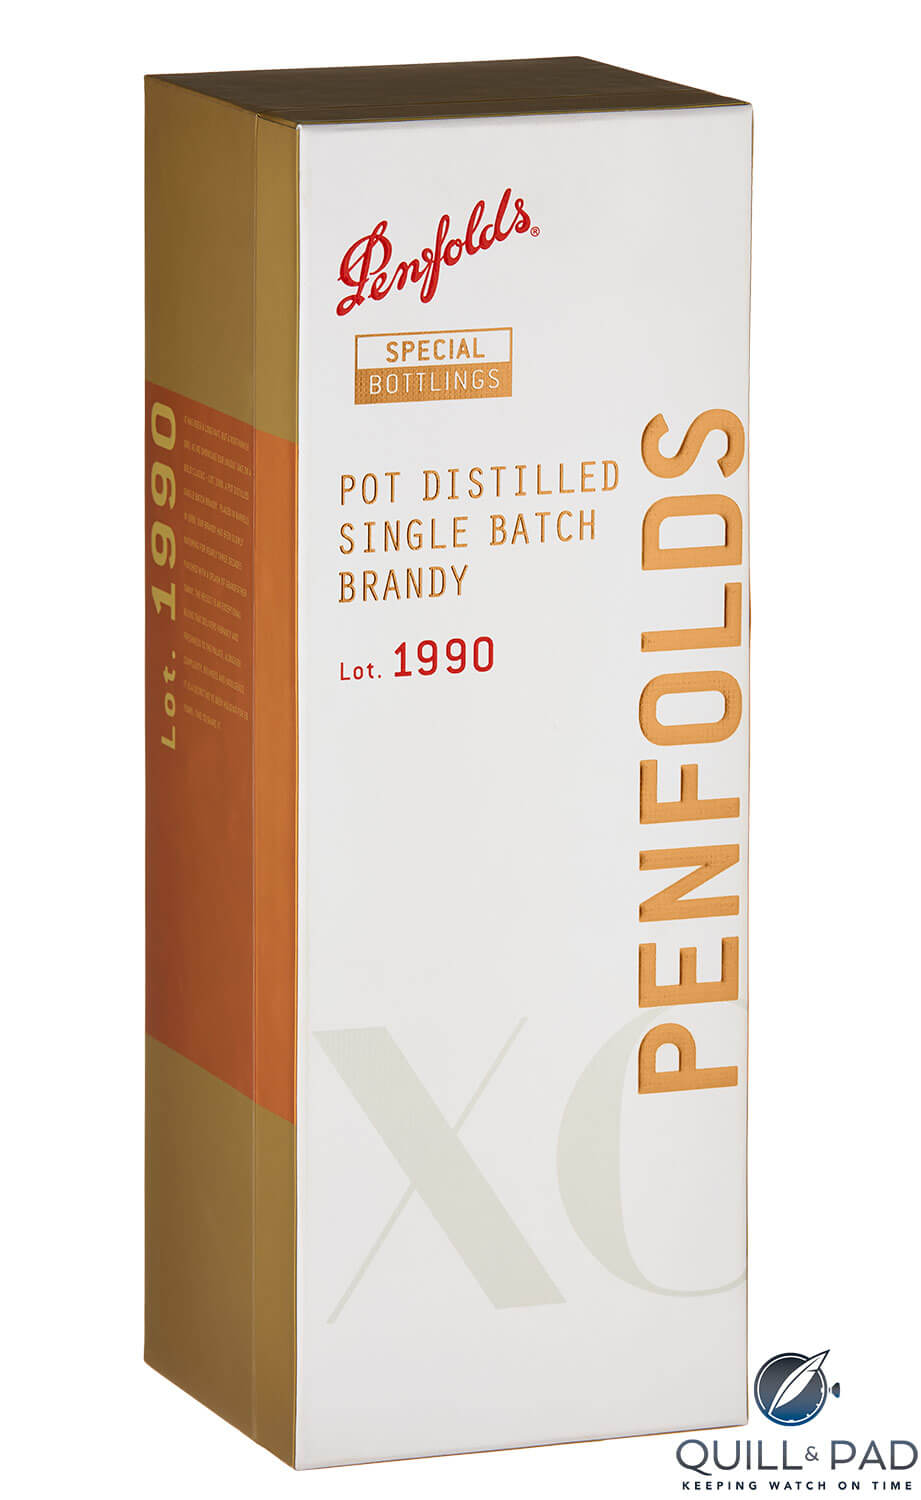 Penfolds Lot 1990 Pot Distilled Single Batch Brandy box